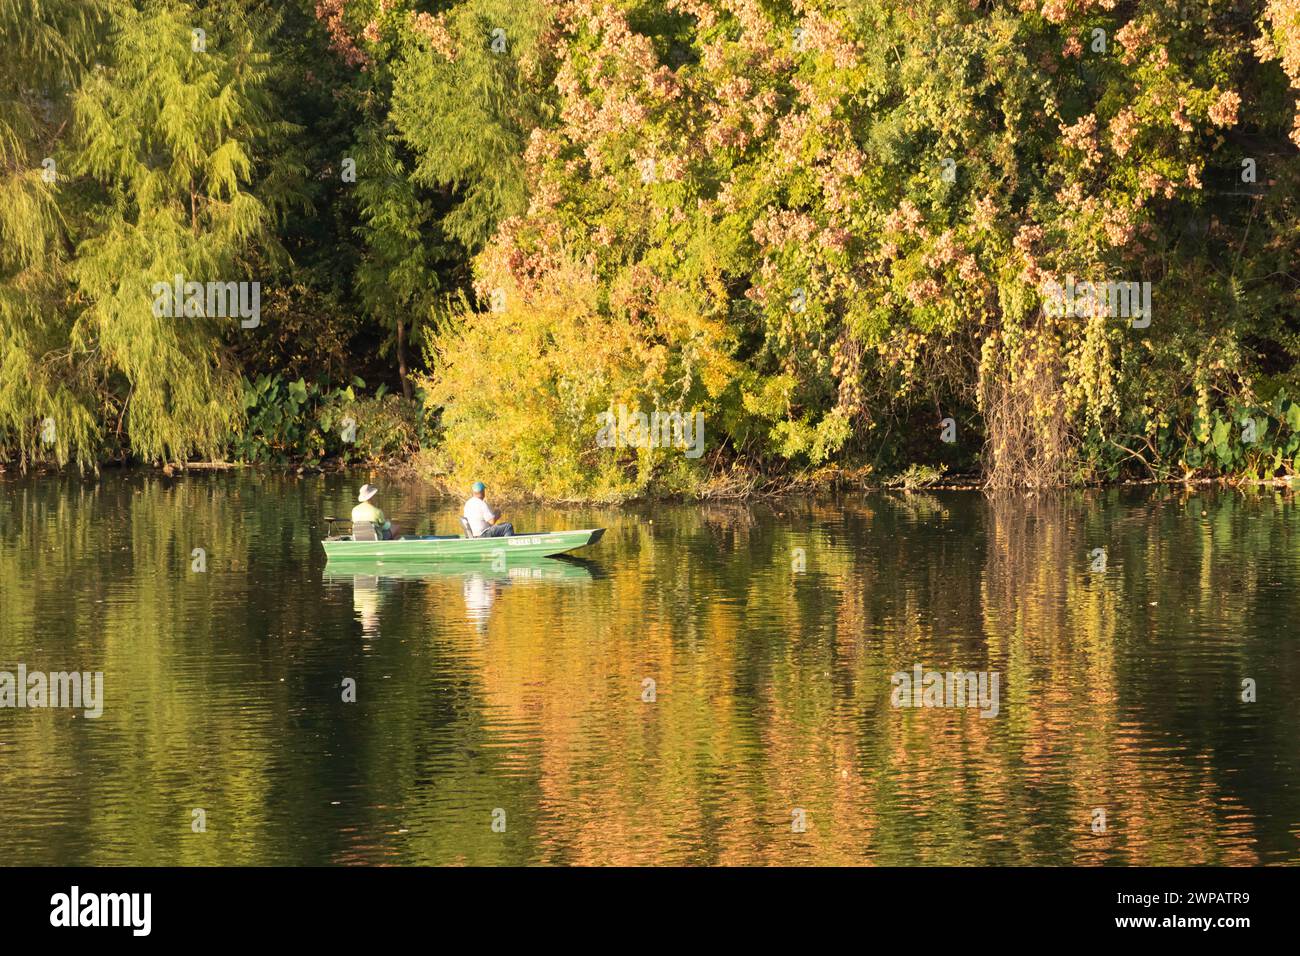 Freizeitbootfahrten auf dem Colorado River in Austin TX USA. Reflexionen von Gebäuden und Blättern auf dem Wasser. Stockfoto